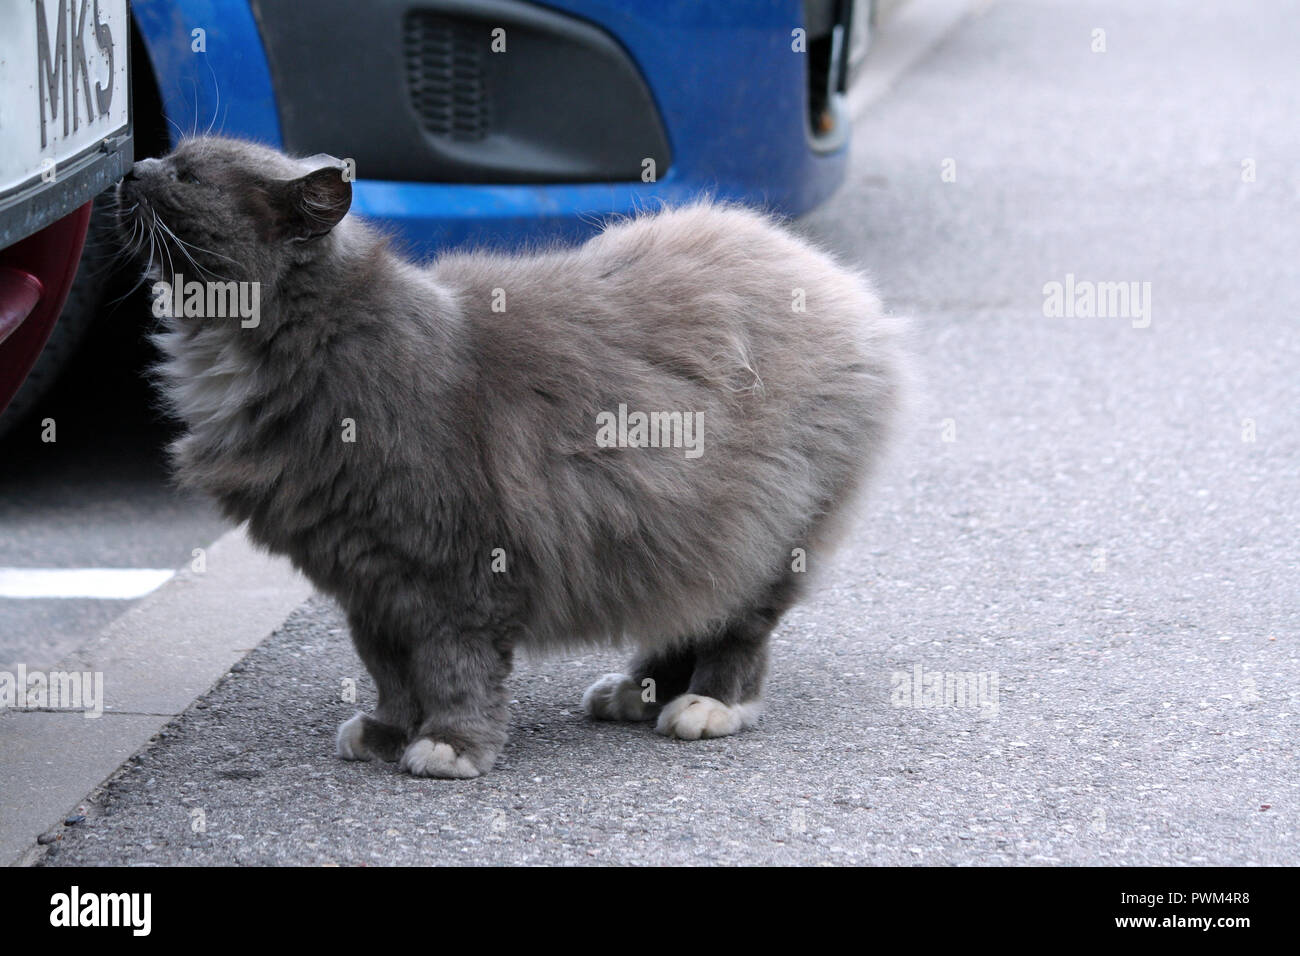 Fluffy cat rue épais gris s'en tient à un bourgogne voiture sur l'asphalte gris et renifle, l'animal a pattes blanches et la poitrine, dans l'arrière-plan fait partie de Banque D'Images